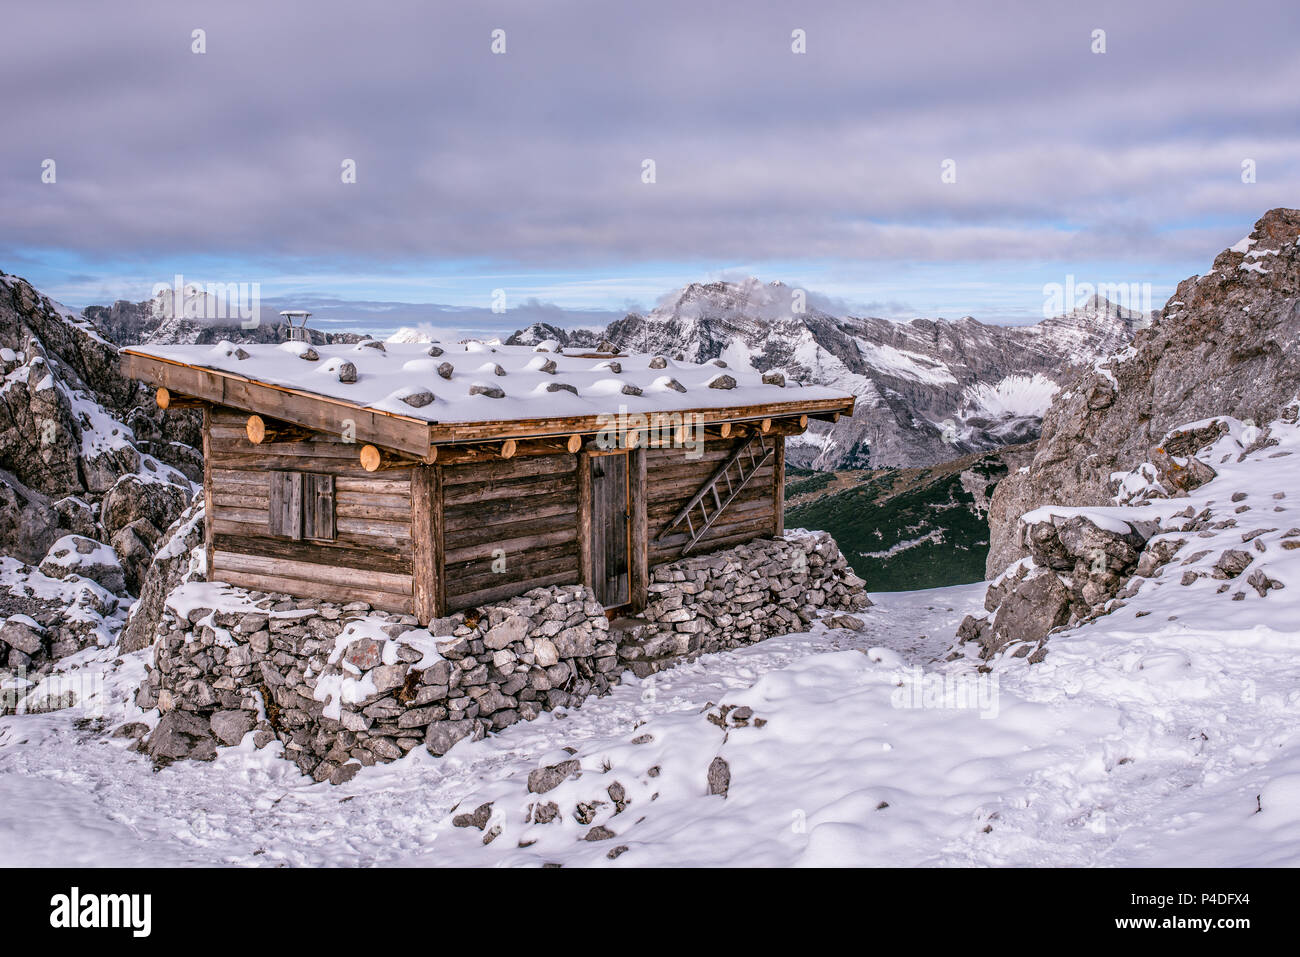 Eine Hütte in den Alpen von Österreich im Winter im Schnee. Hafelekarspitze - Seegrube im Karwendel Gebirge, Innsbruck, Österreich, Europa Stockfoto